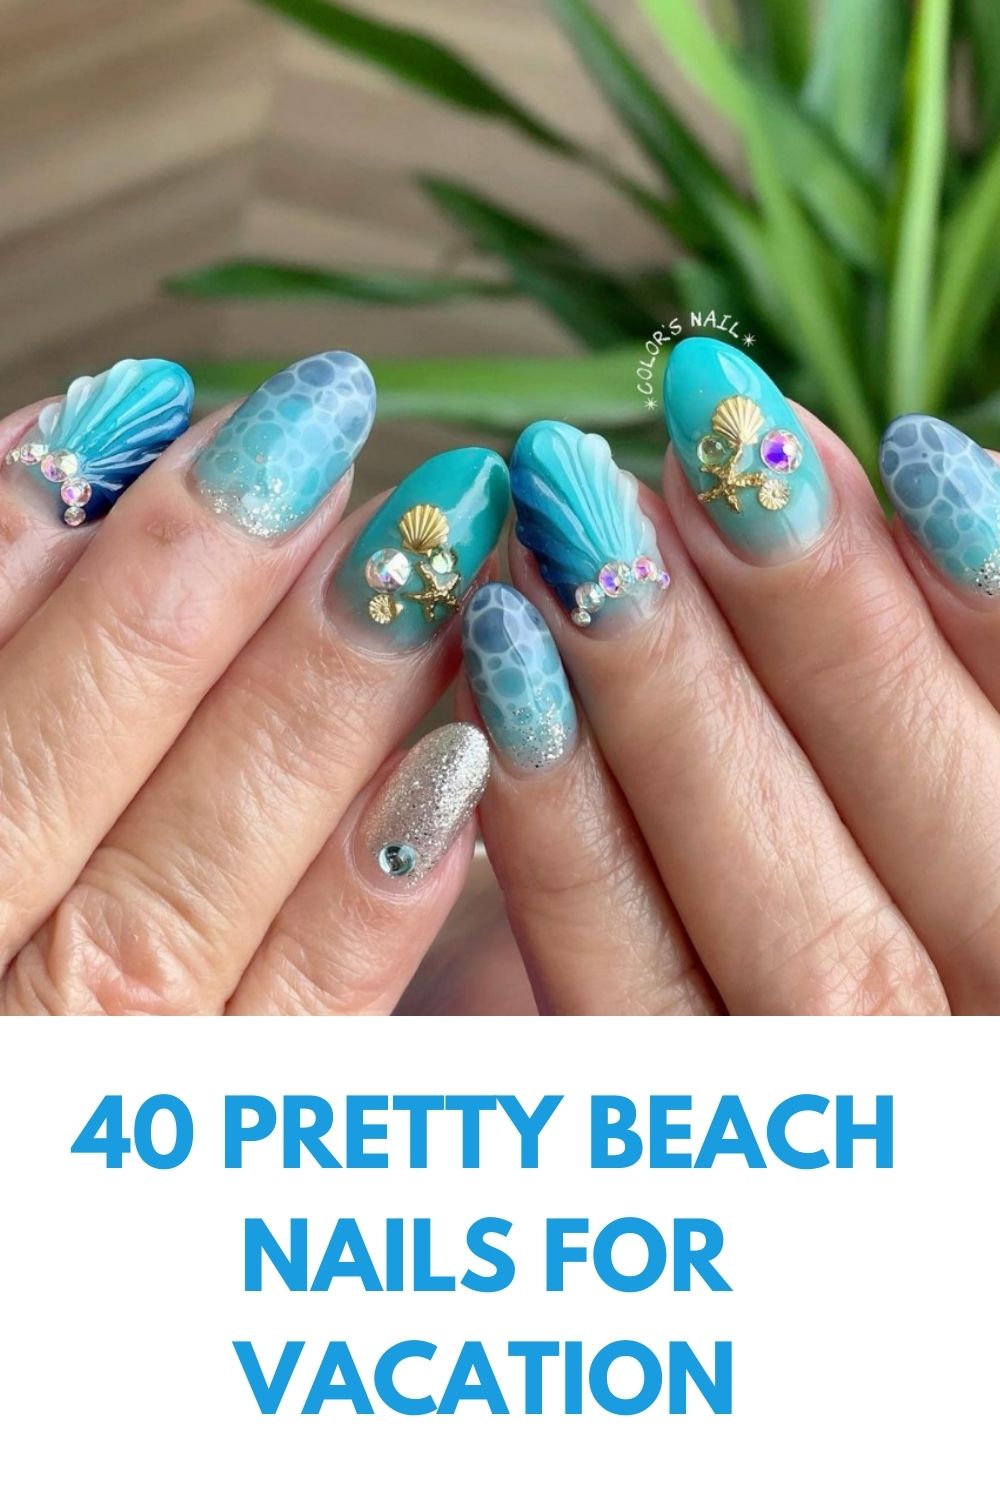 Beach Nail Designs: 40 Pretty Nail Ideas For Vacation!